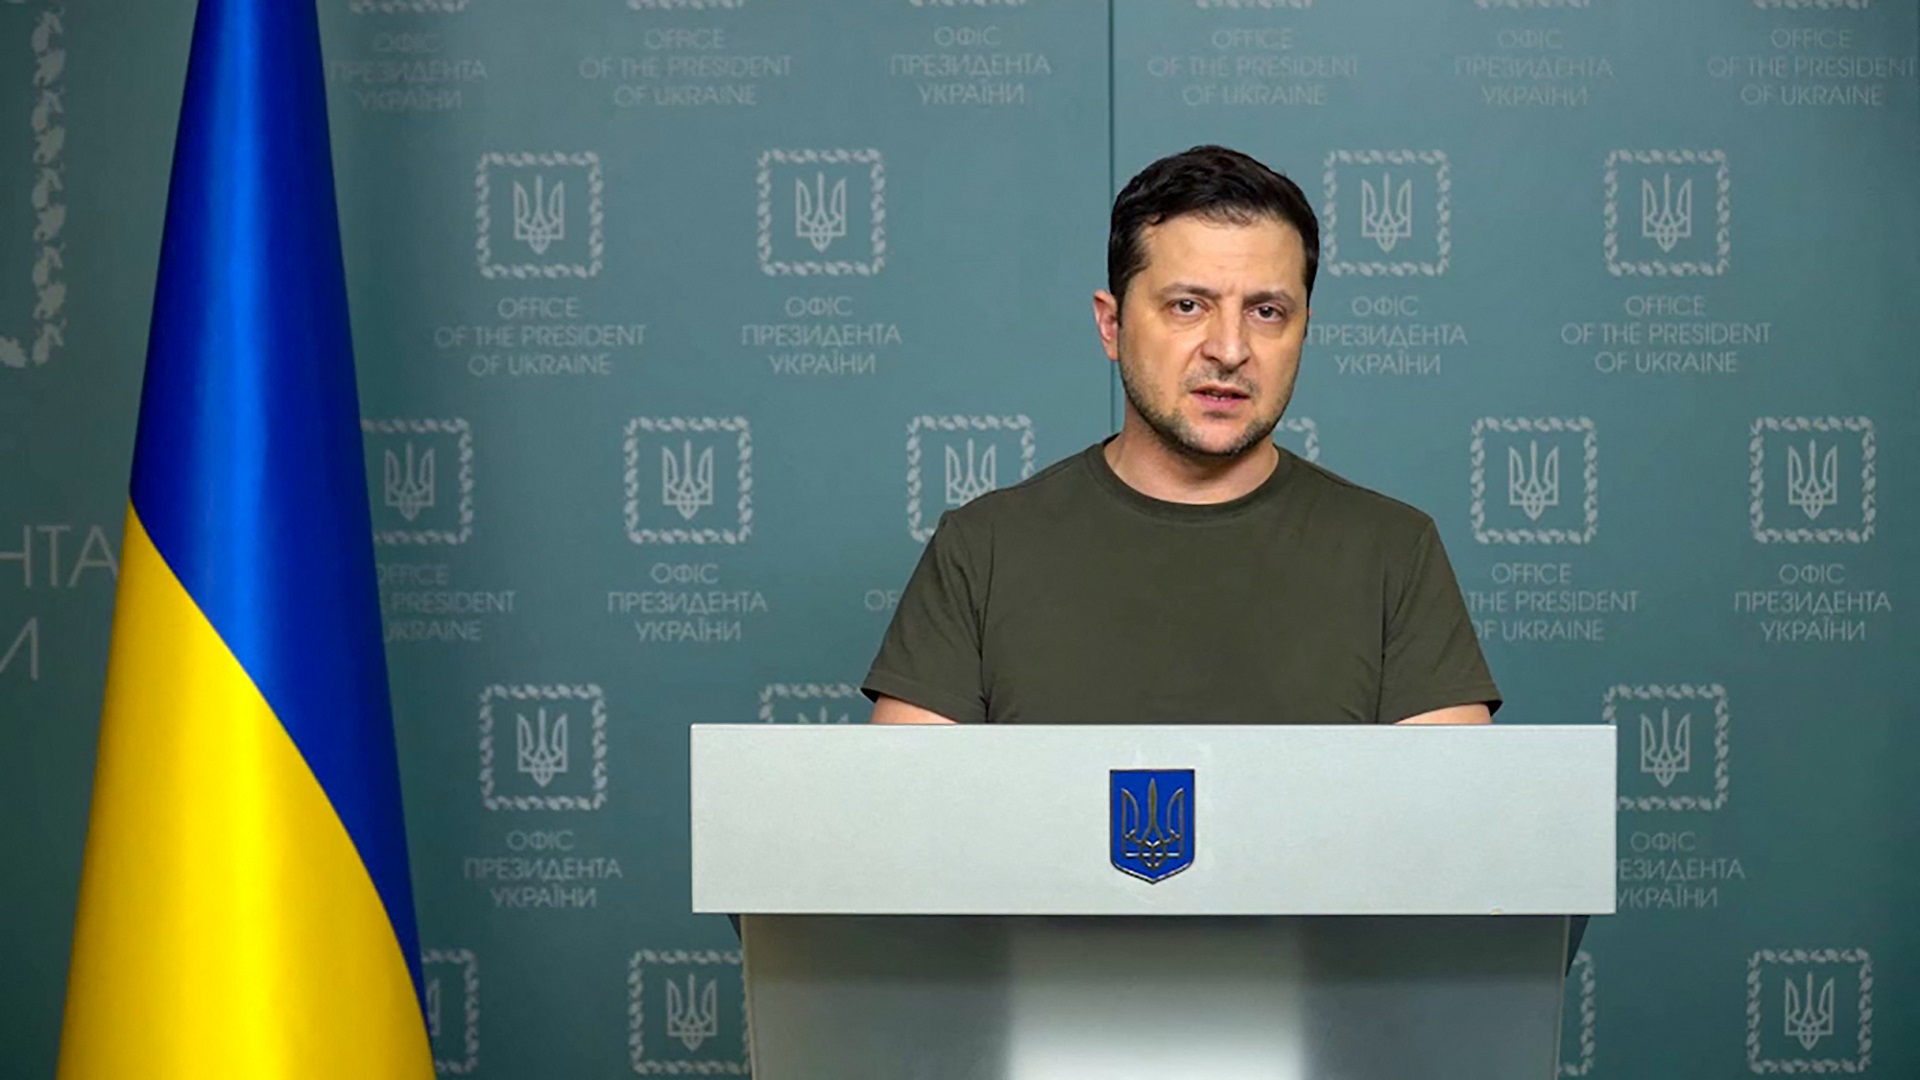 Esta grabación de vídeo tomada y publicada por el servicio de prensa de la Presidencia de Ucrania muestra al presidente ucraniano, Volodimir Zelensky, pronunciando un discurso en Kiev. (Foto de la PRESIDENCIA DE UCRANIA / AFP)

